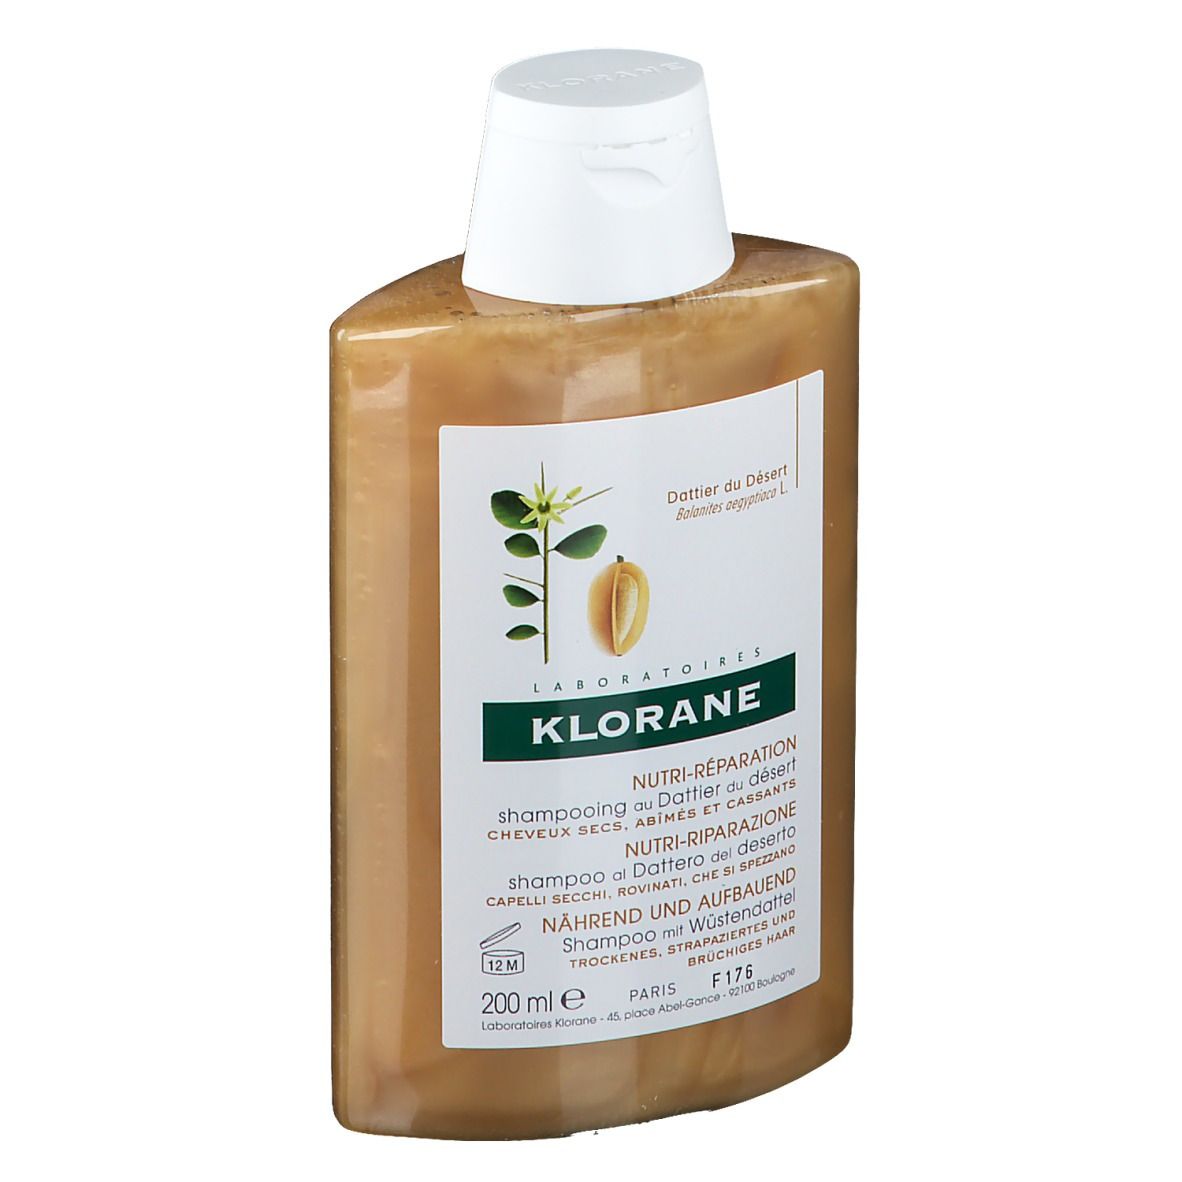 KLORANE Shampoo mit Wüstendattel